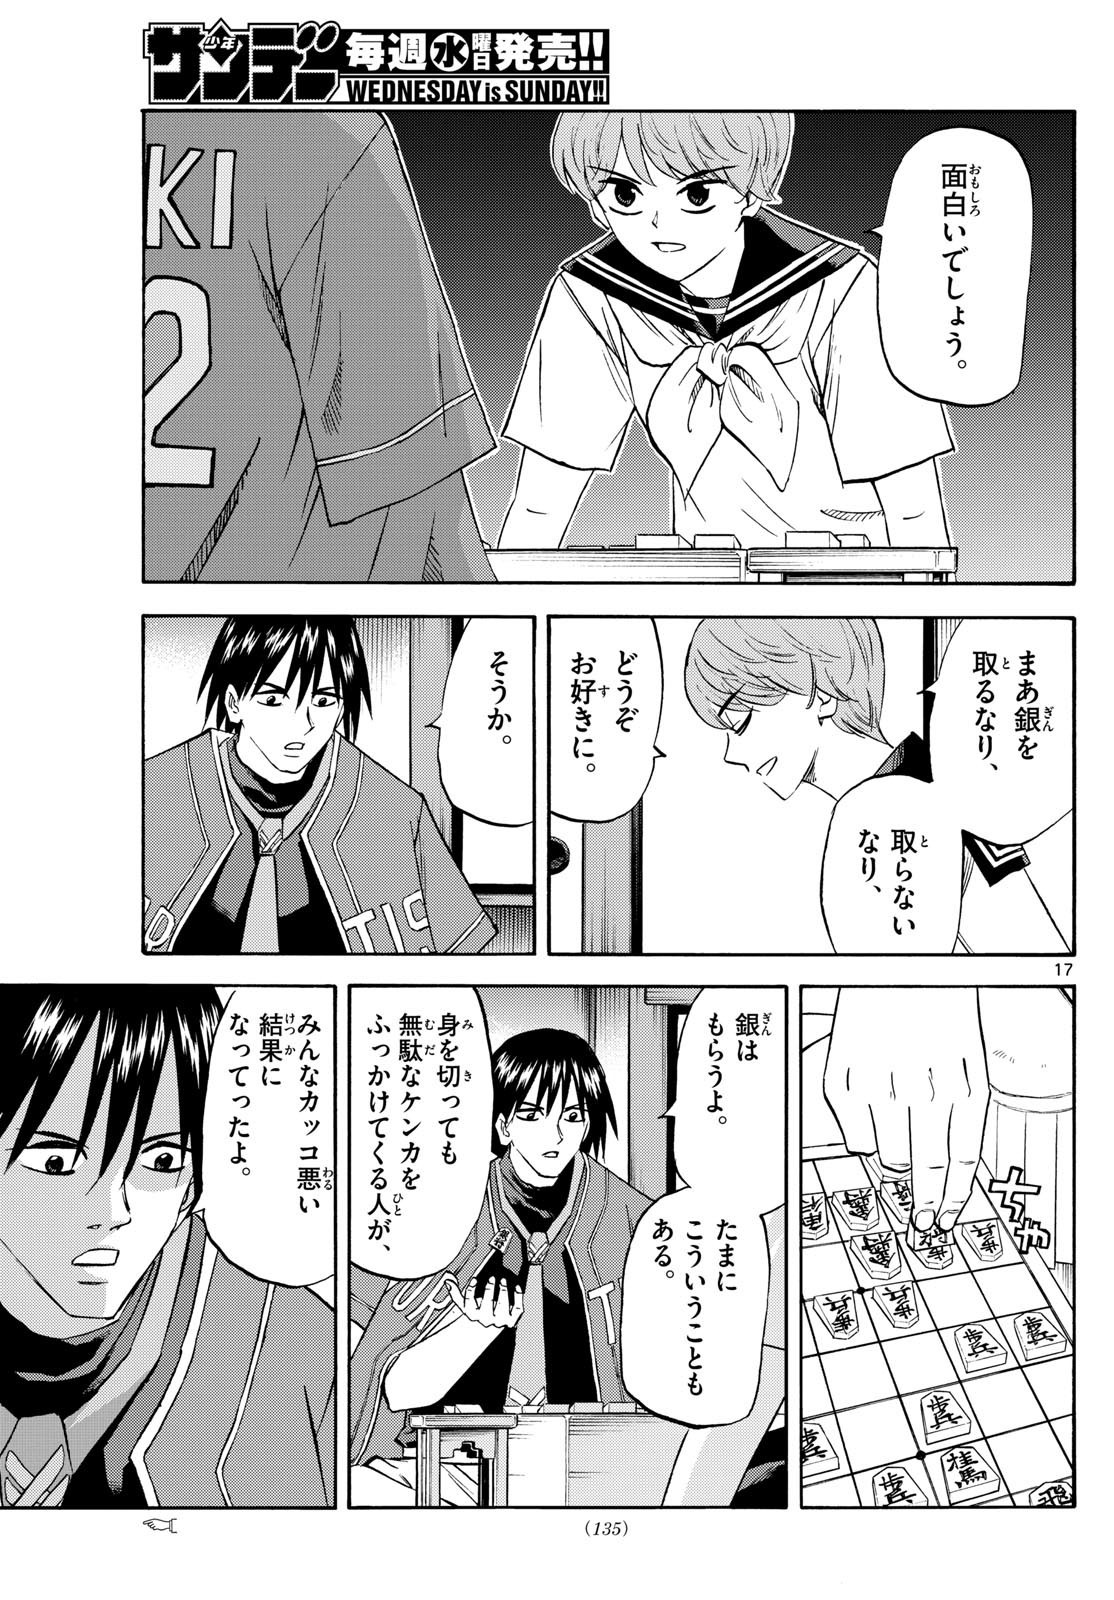 Ryu-to-Ichigo - Chapter 197 - Page 17